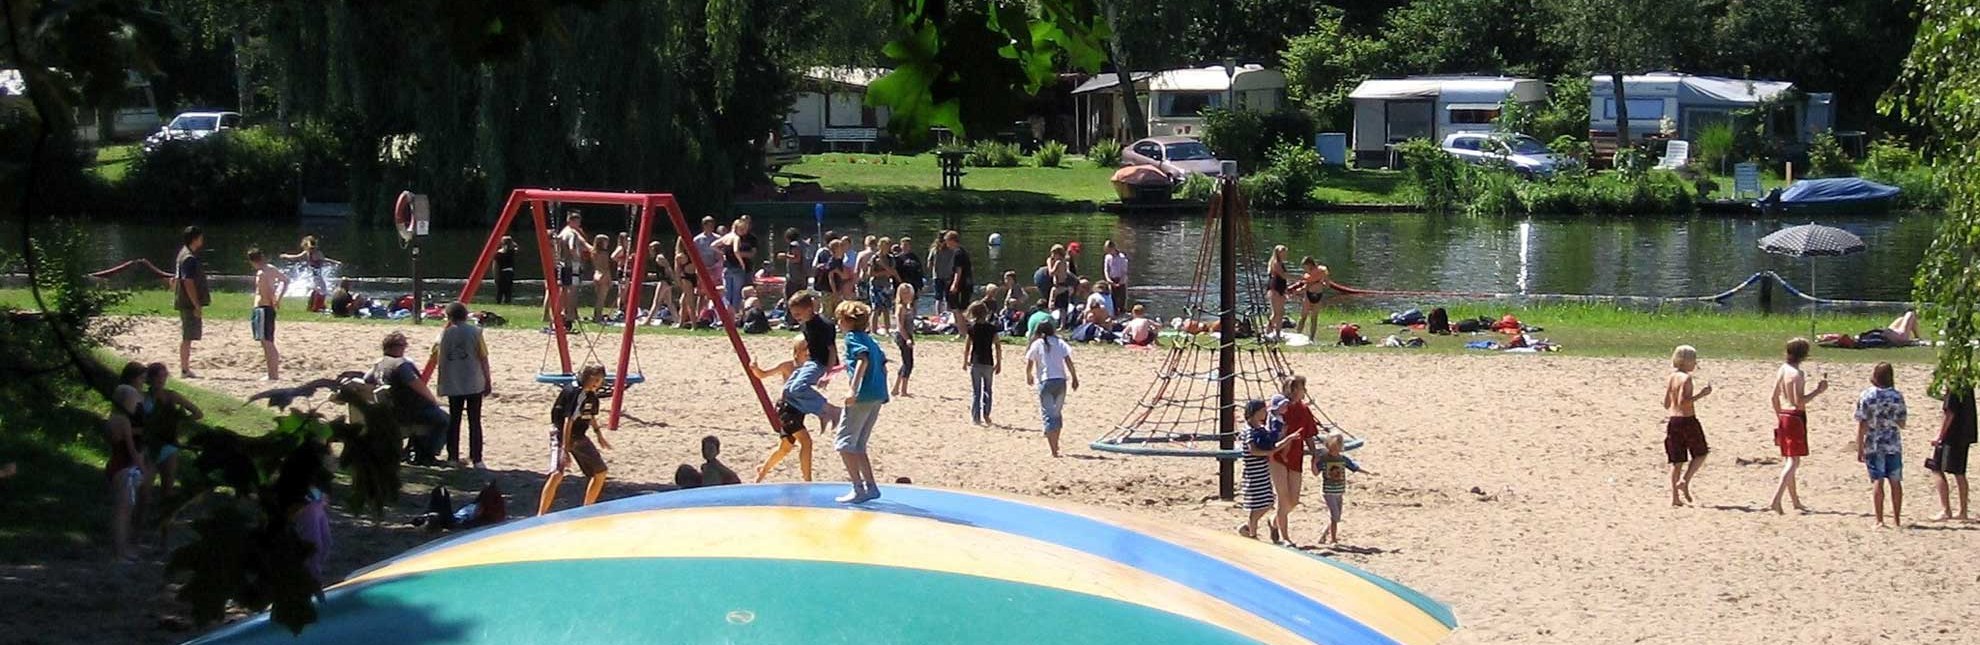 Die Freizeitwelt Güster lädt zu Spiel- und Badespaß am Prüßsee ein., © Freizeitwelt Güster